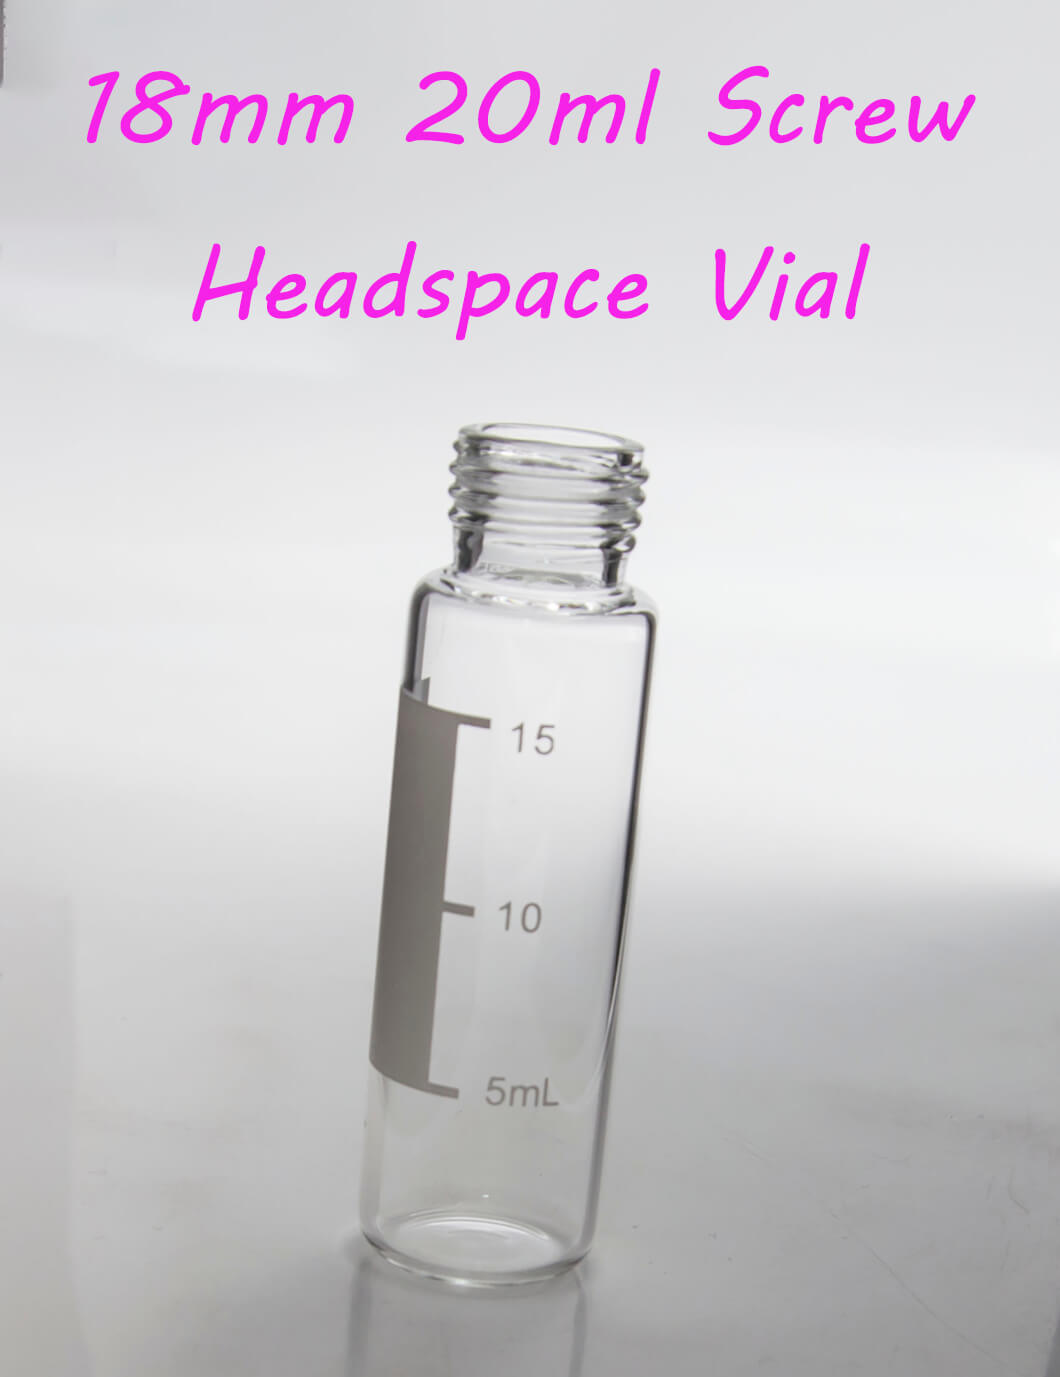 18mm 20ml Screw Headspace Vial